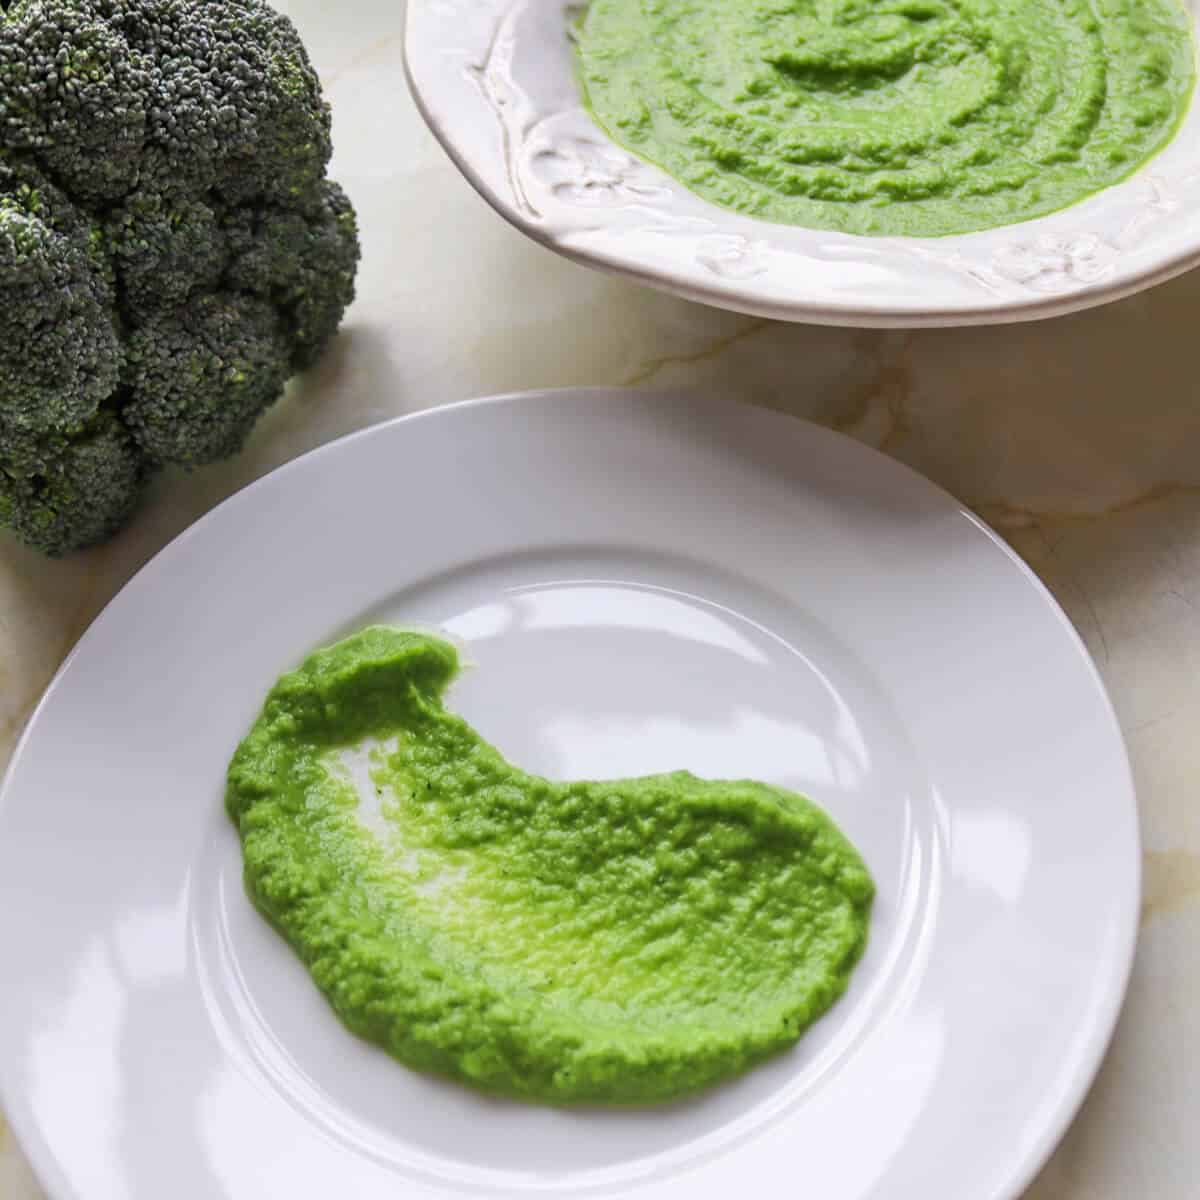 Truffle broccoli asparagus puree on a dinner plate.